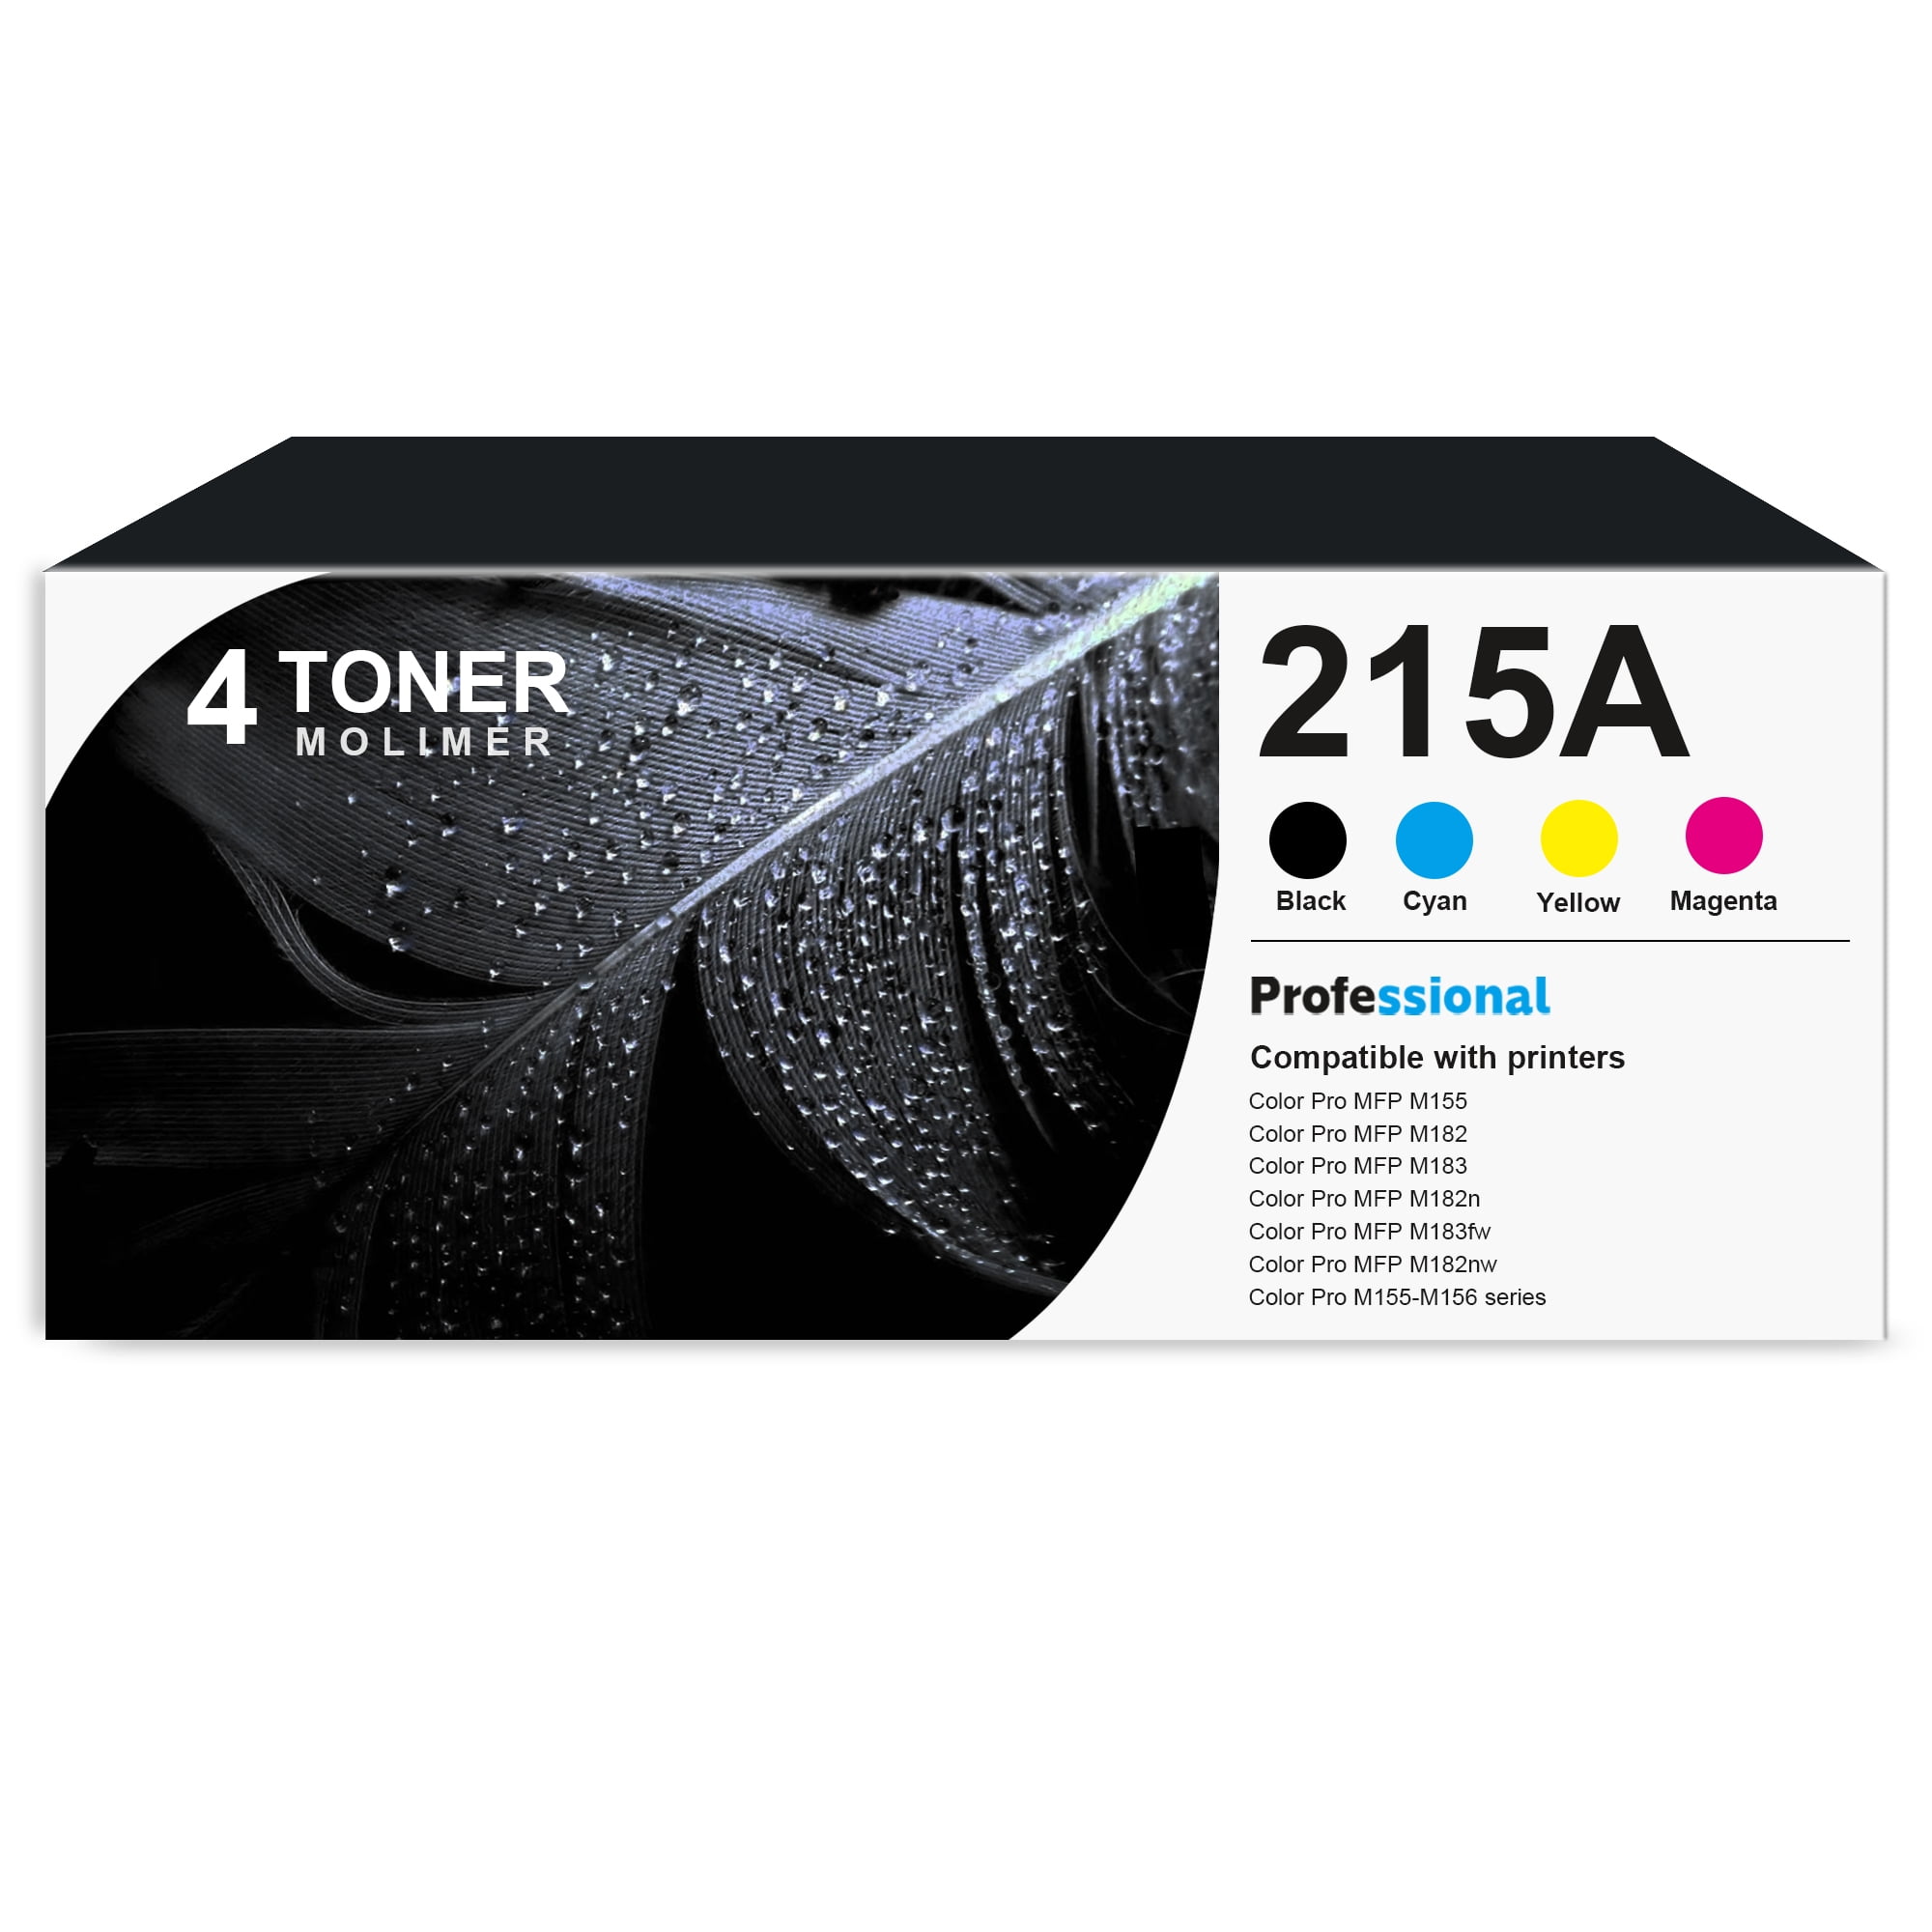 Toner Chip For Hp Color Laserjet Pro M182 M182n M182nw M183 M183fw M183nw  Color Laser Jet Pro Mfp M155/182/182n/183nw/183fw - Cartridge Chip -  AliExpress